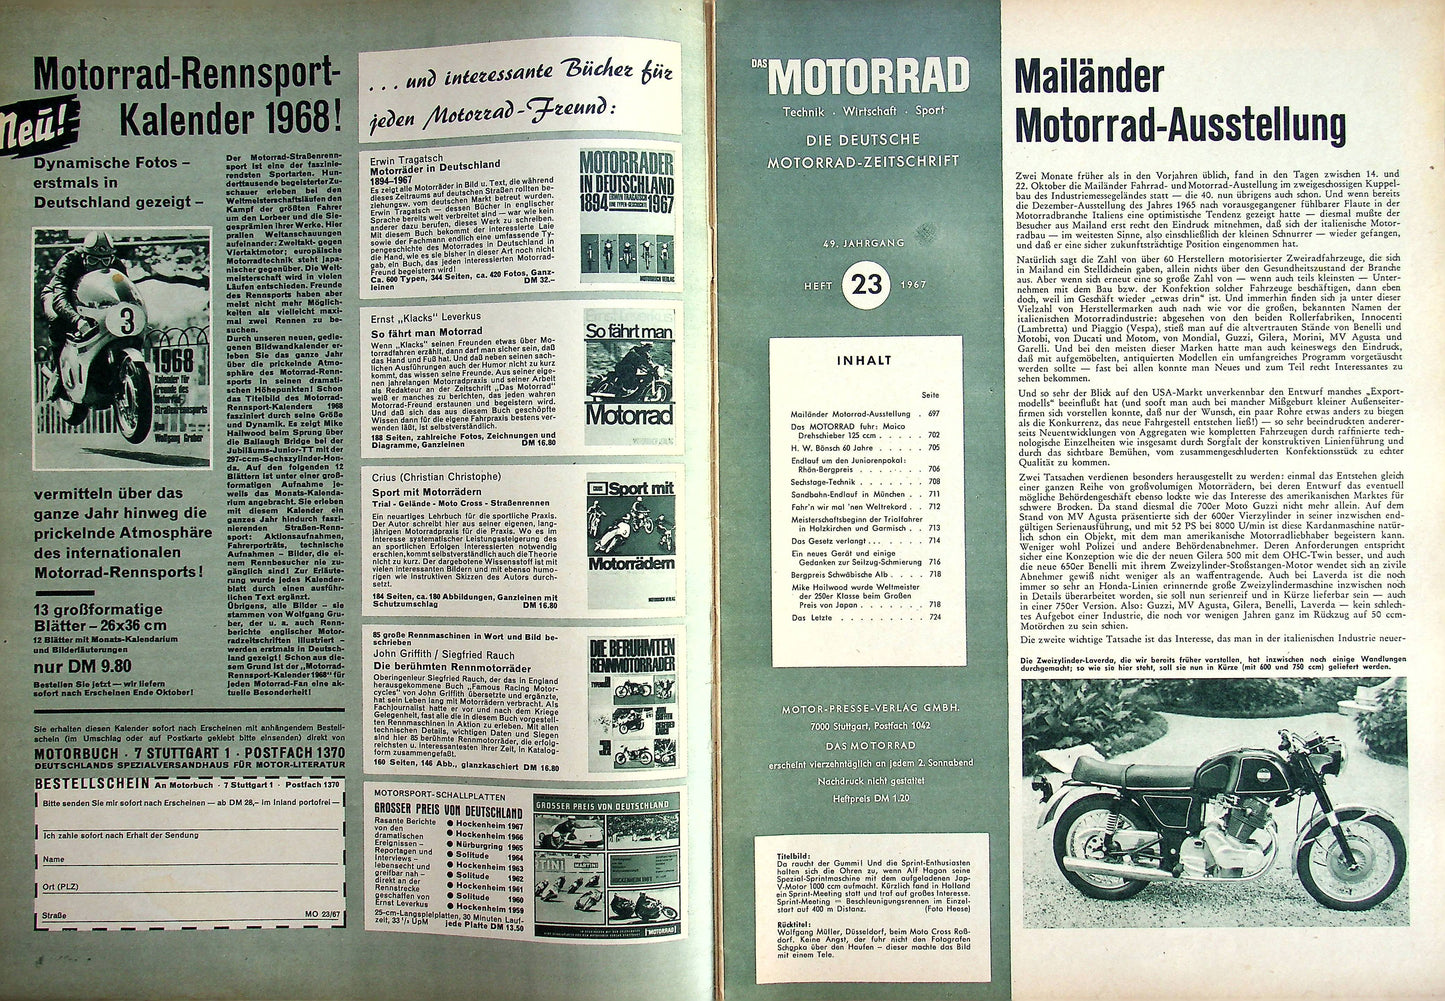 Motorrad 23/1967